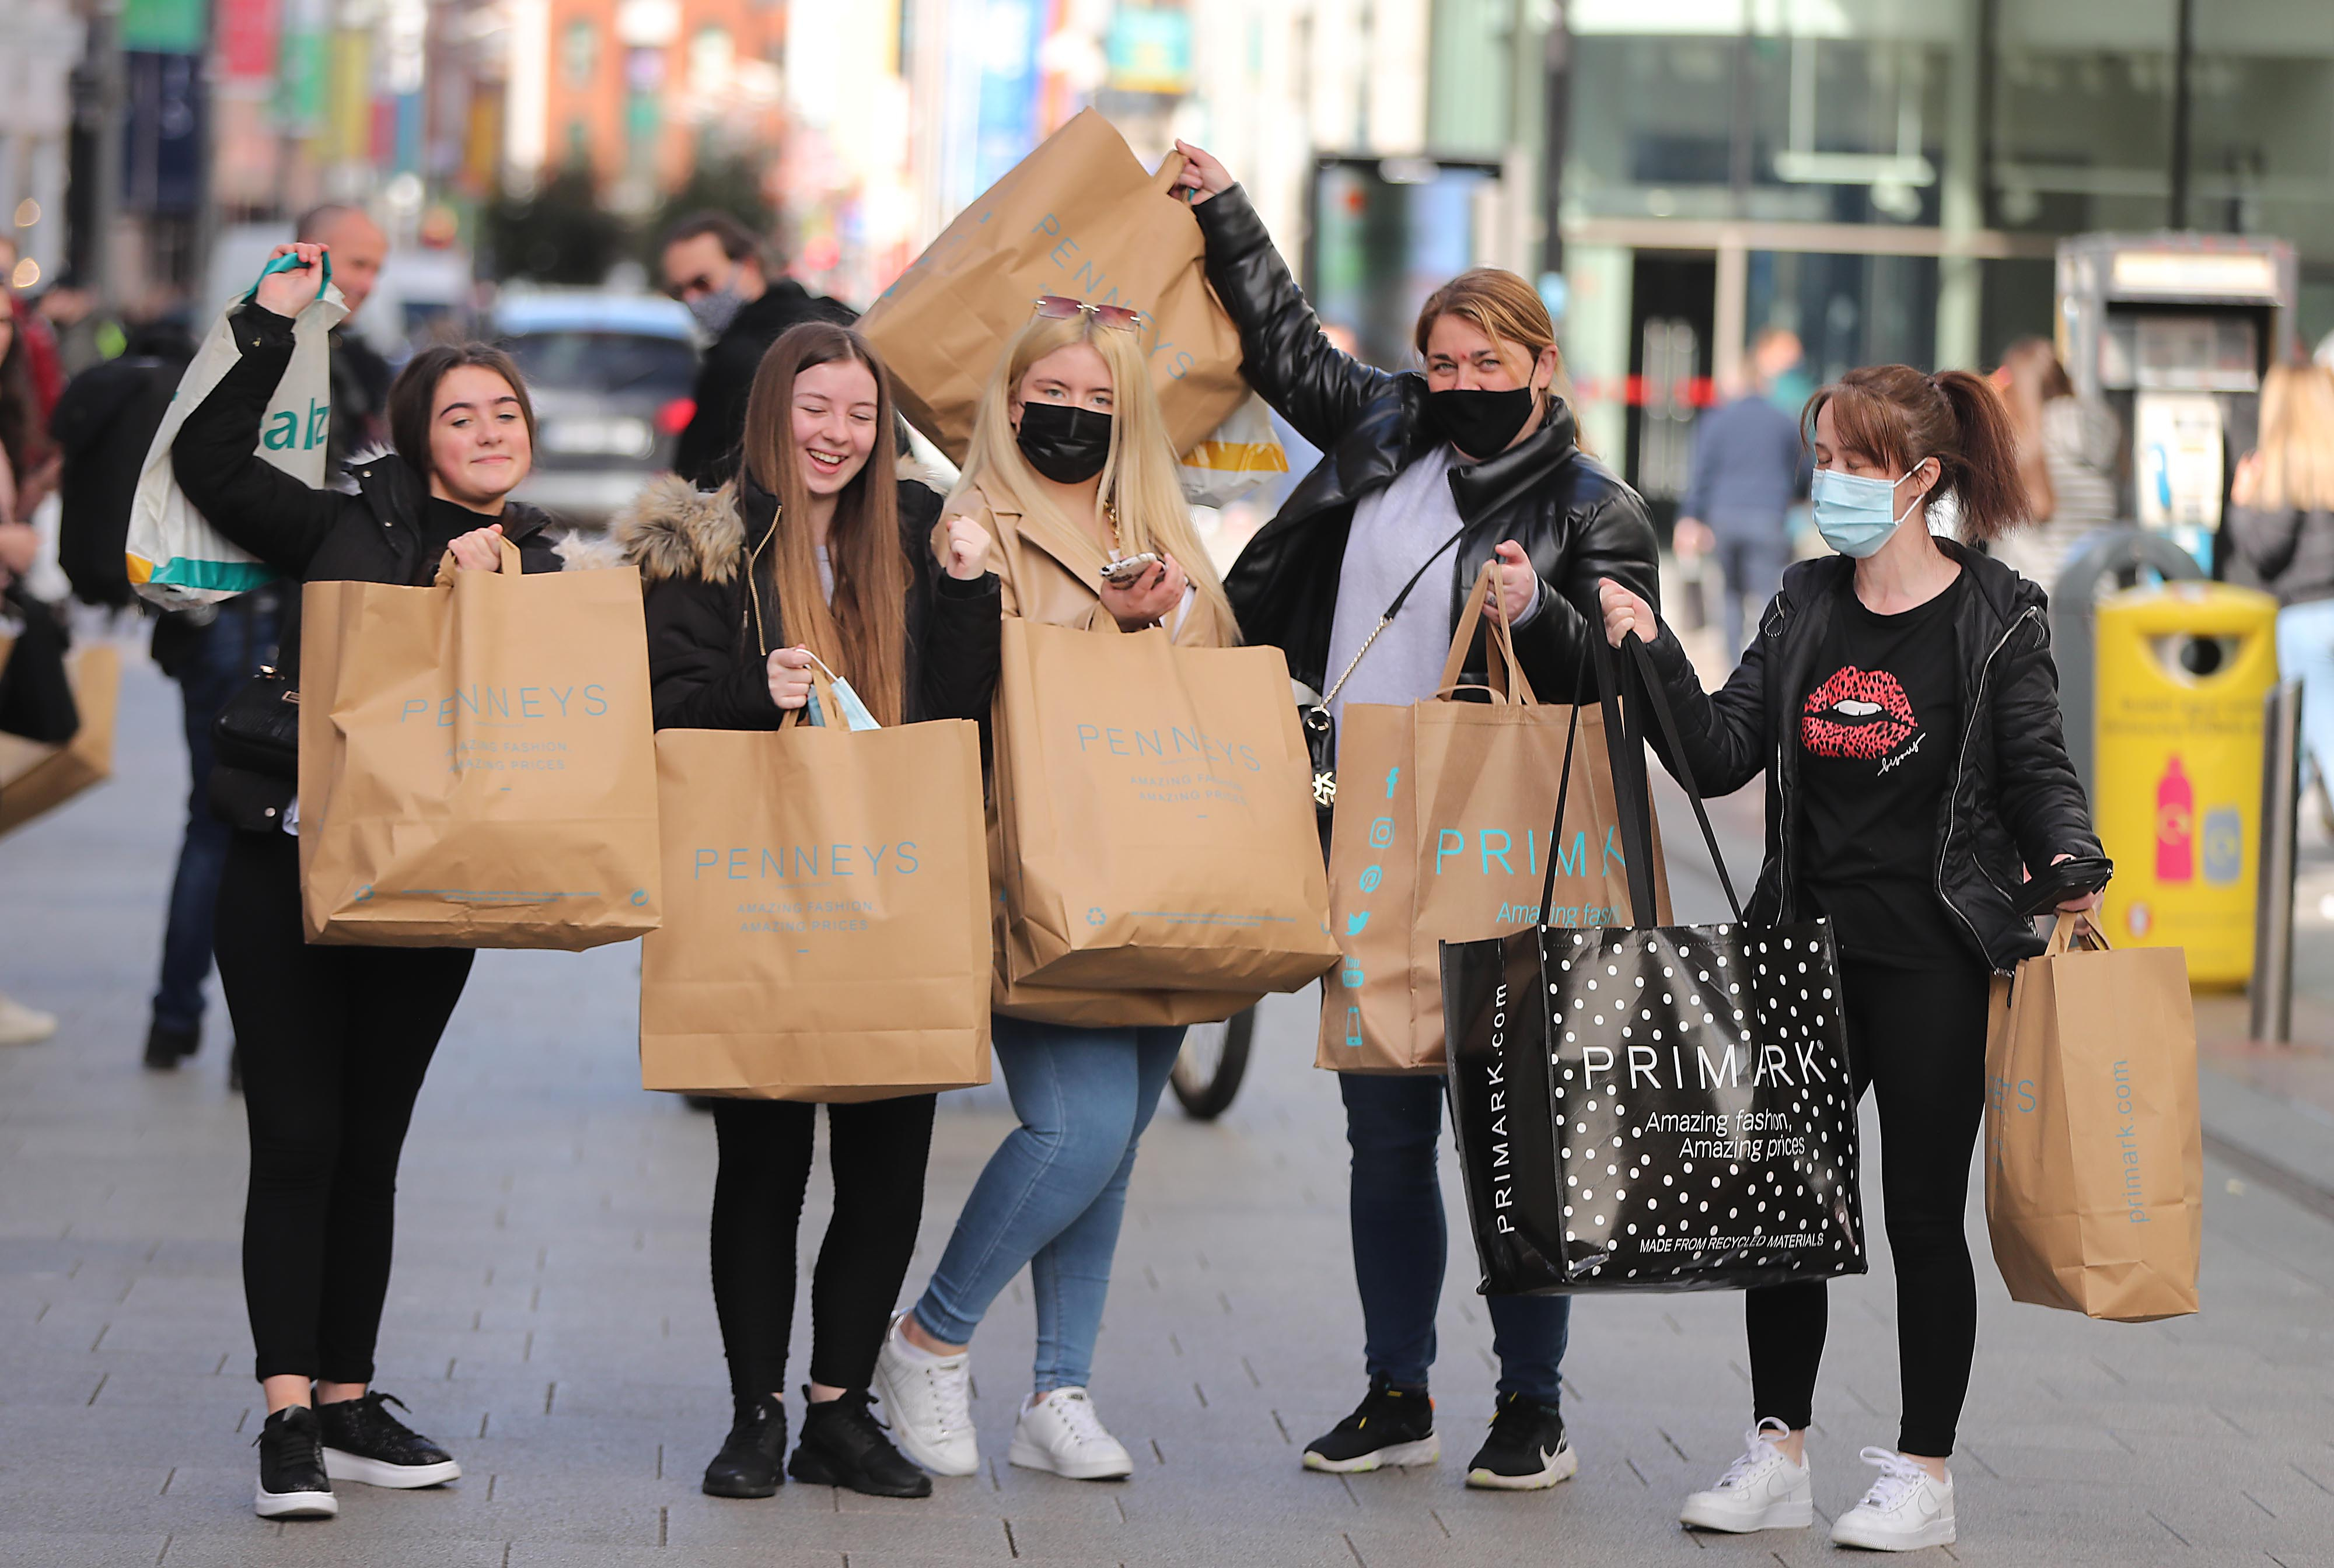 Junge Frauen heben ihre Einkaufstüten nach einer Shopping-Tour in die Höhe